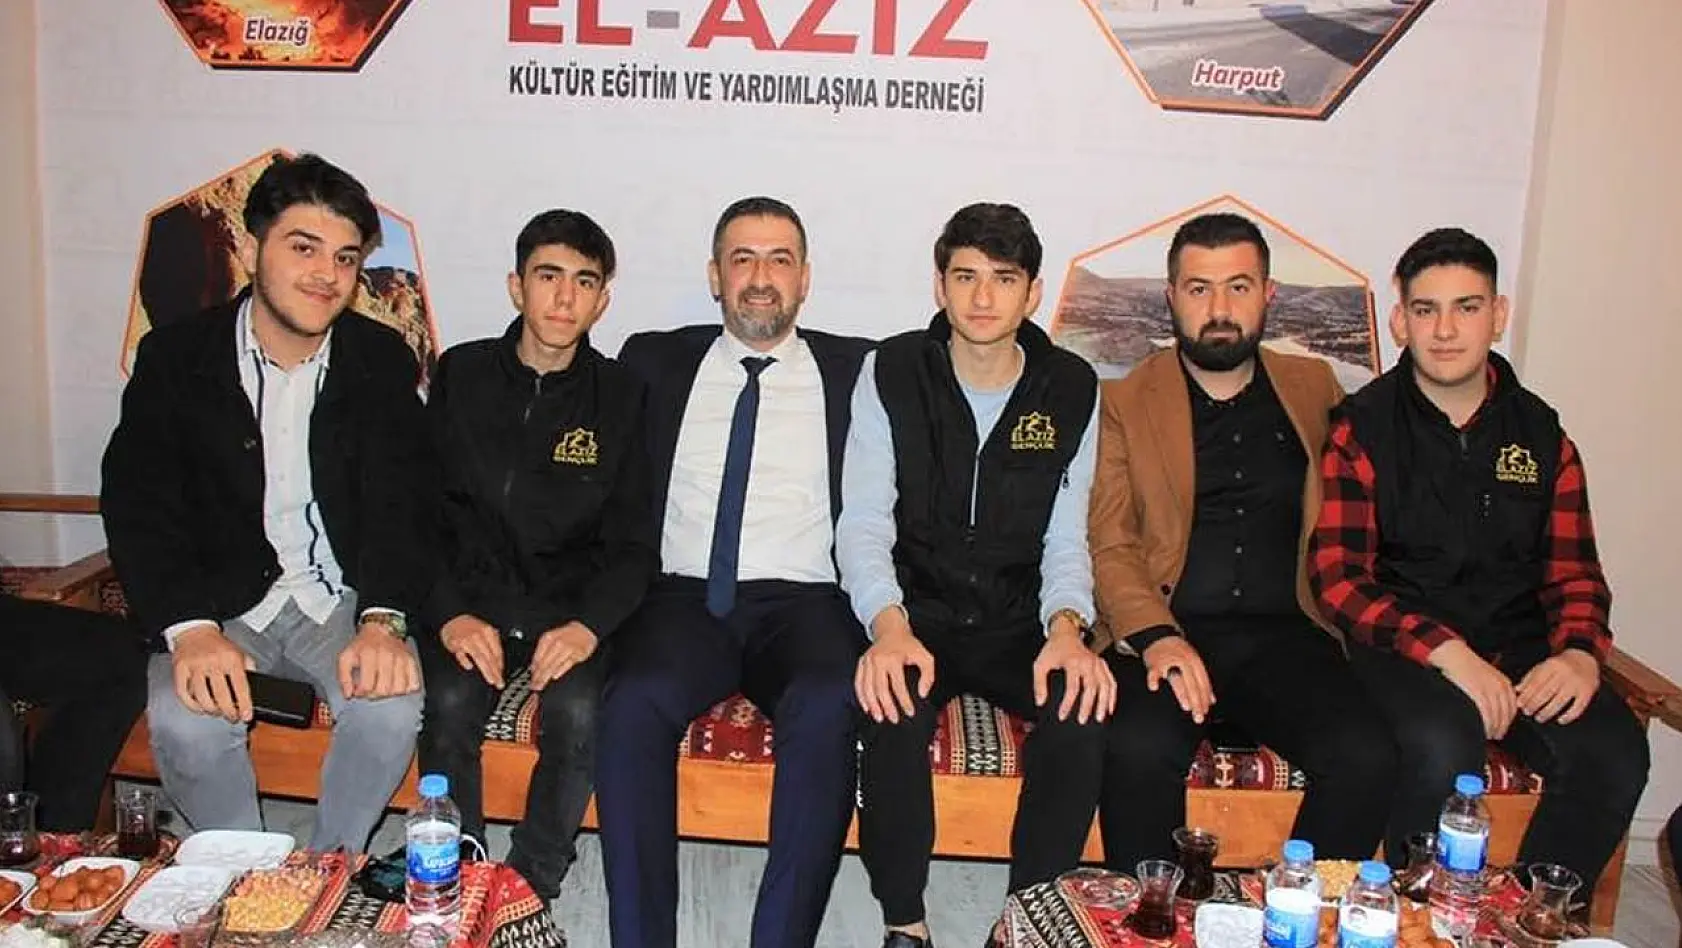 MHP Elazığ Milletvekili Adayı Işıkver, El- Aziz Kültür Eğitim Ve Yardımlaşma Derneği'ni Ziyaret Etti